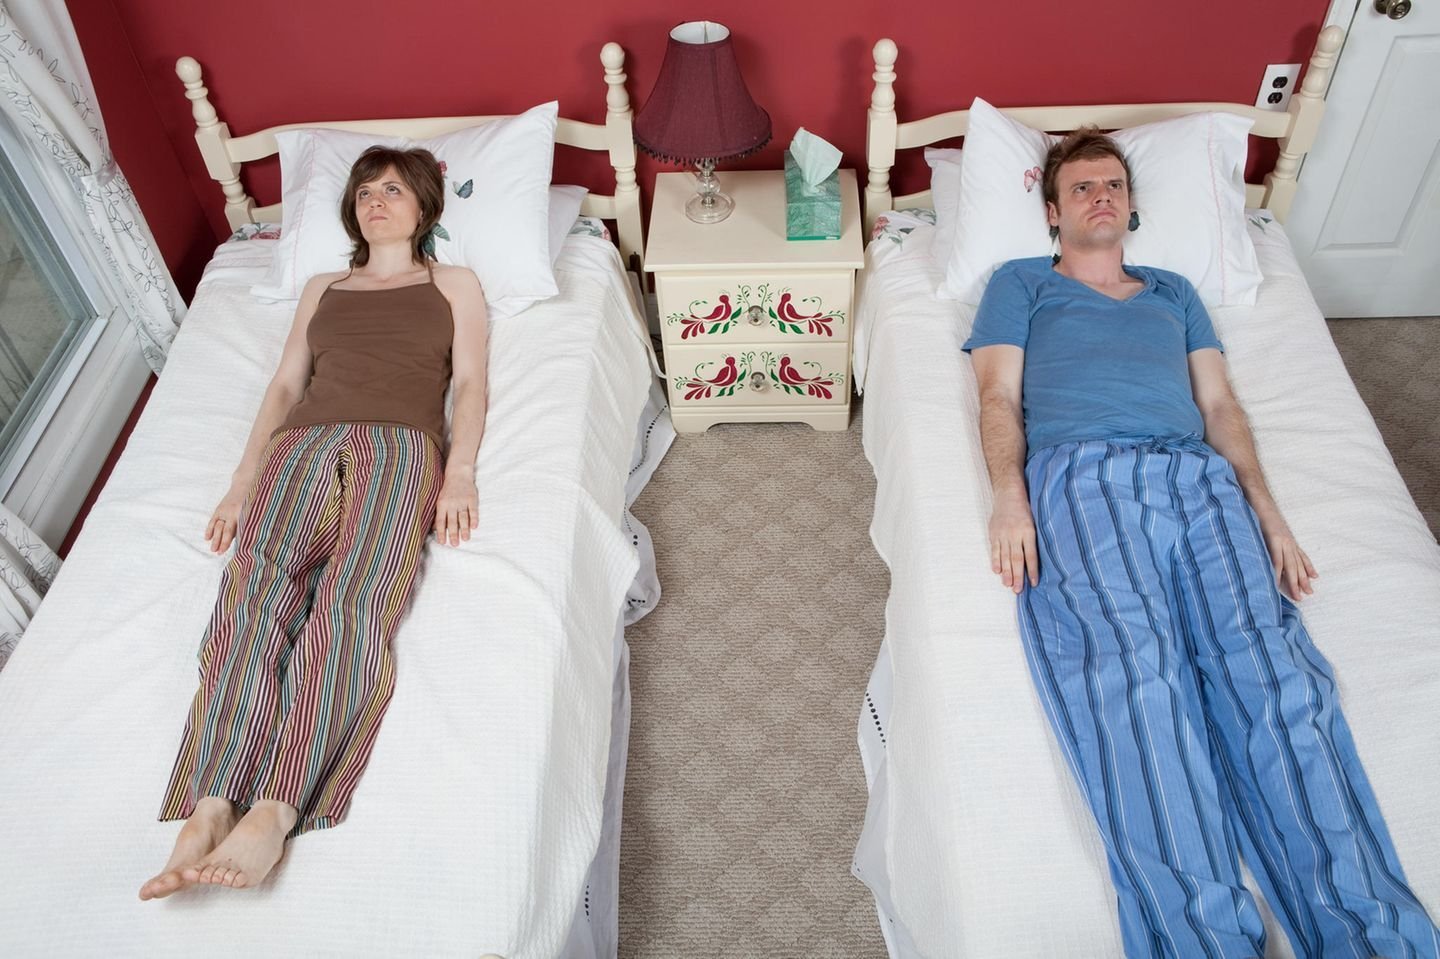 Квартира 1 2 с мужем. Сон в разных кроватях. Раздельный сон. Муж и жена спят раздельно. Супружеский раздельный сон в разных кроватях.